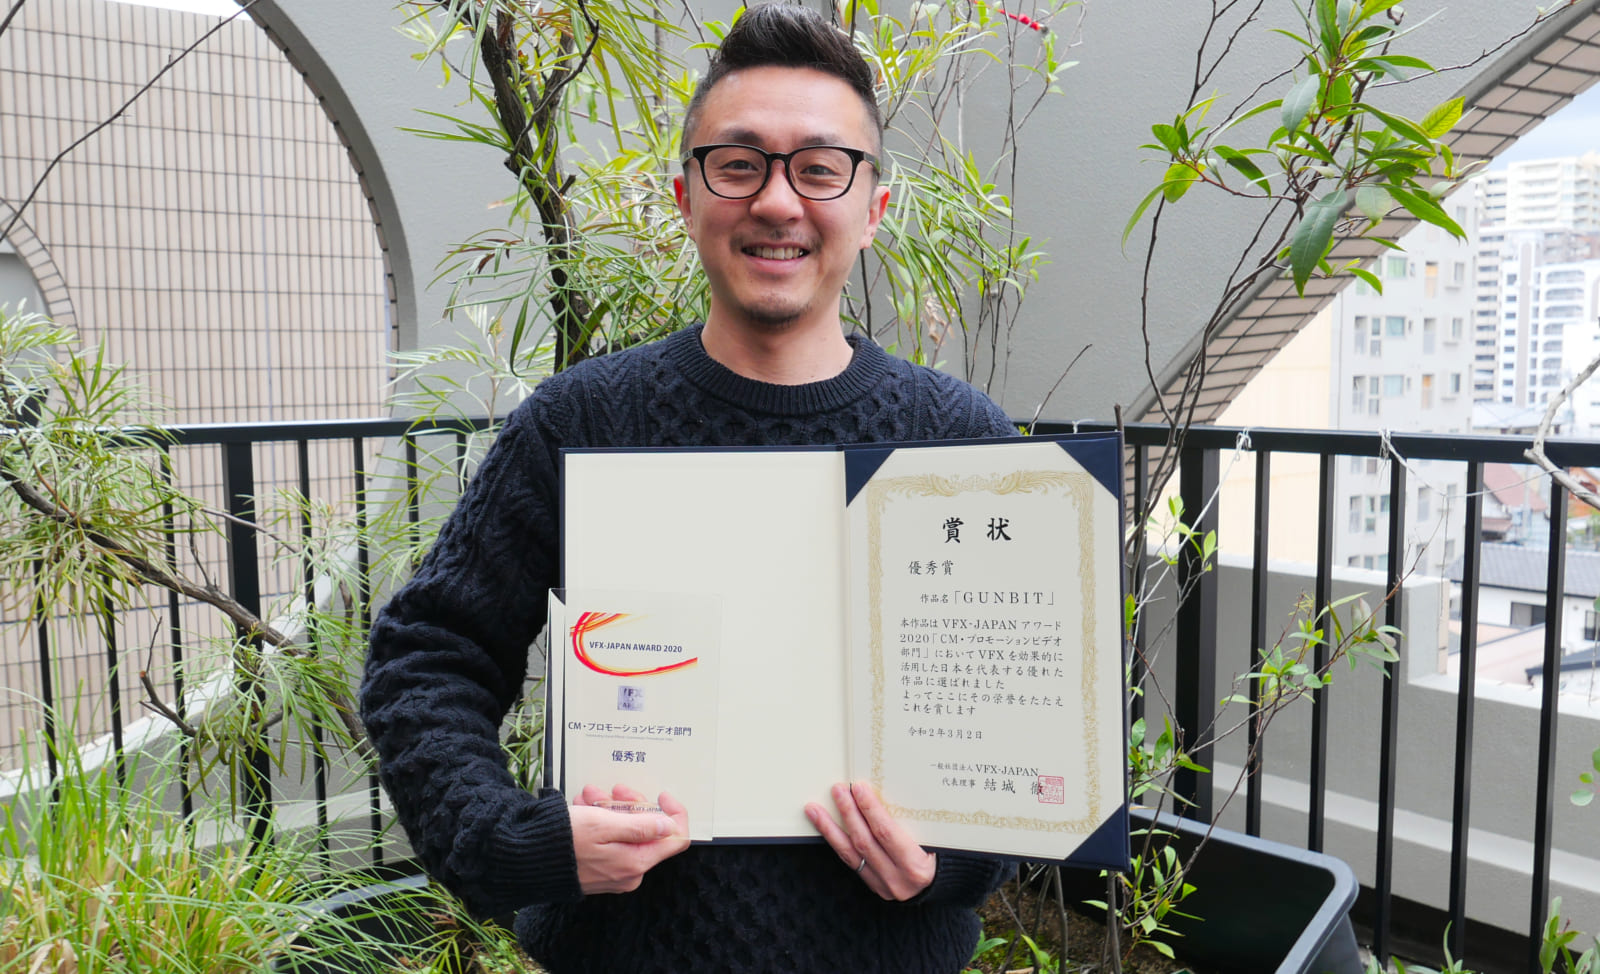 KOO-KI 空気株式会社 - 映像制作(CM PR)KOO-KI 空気株式会社 - 映像制作(CM PR)NEWSVFX-JAPANアワード2020で｢GUNBIT｣が優秀賞を受賞しました！